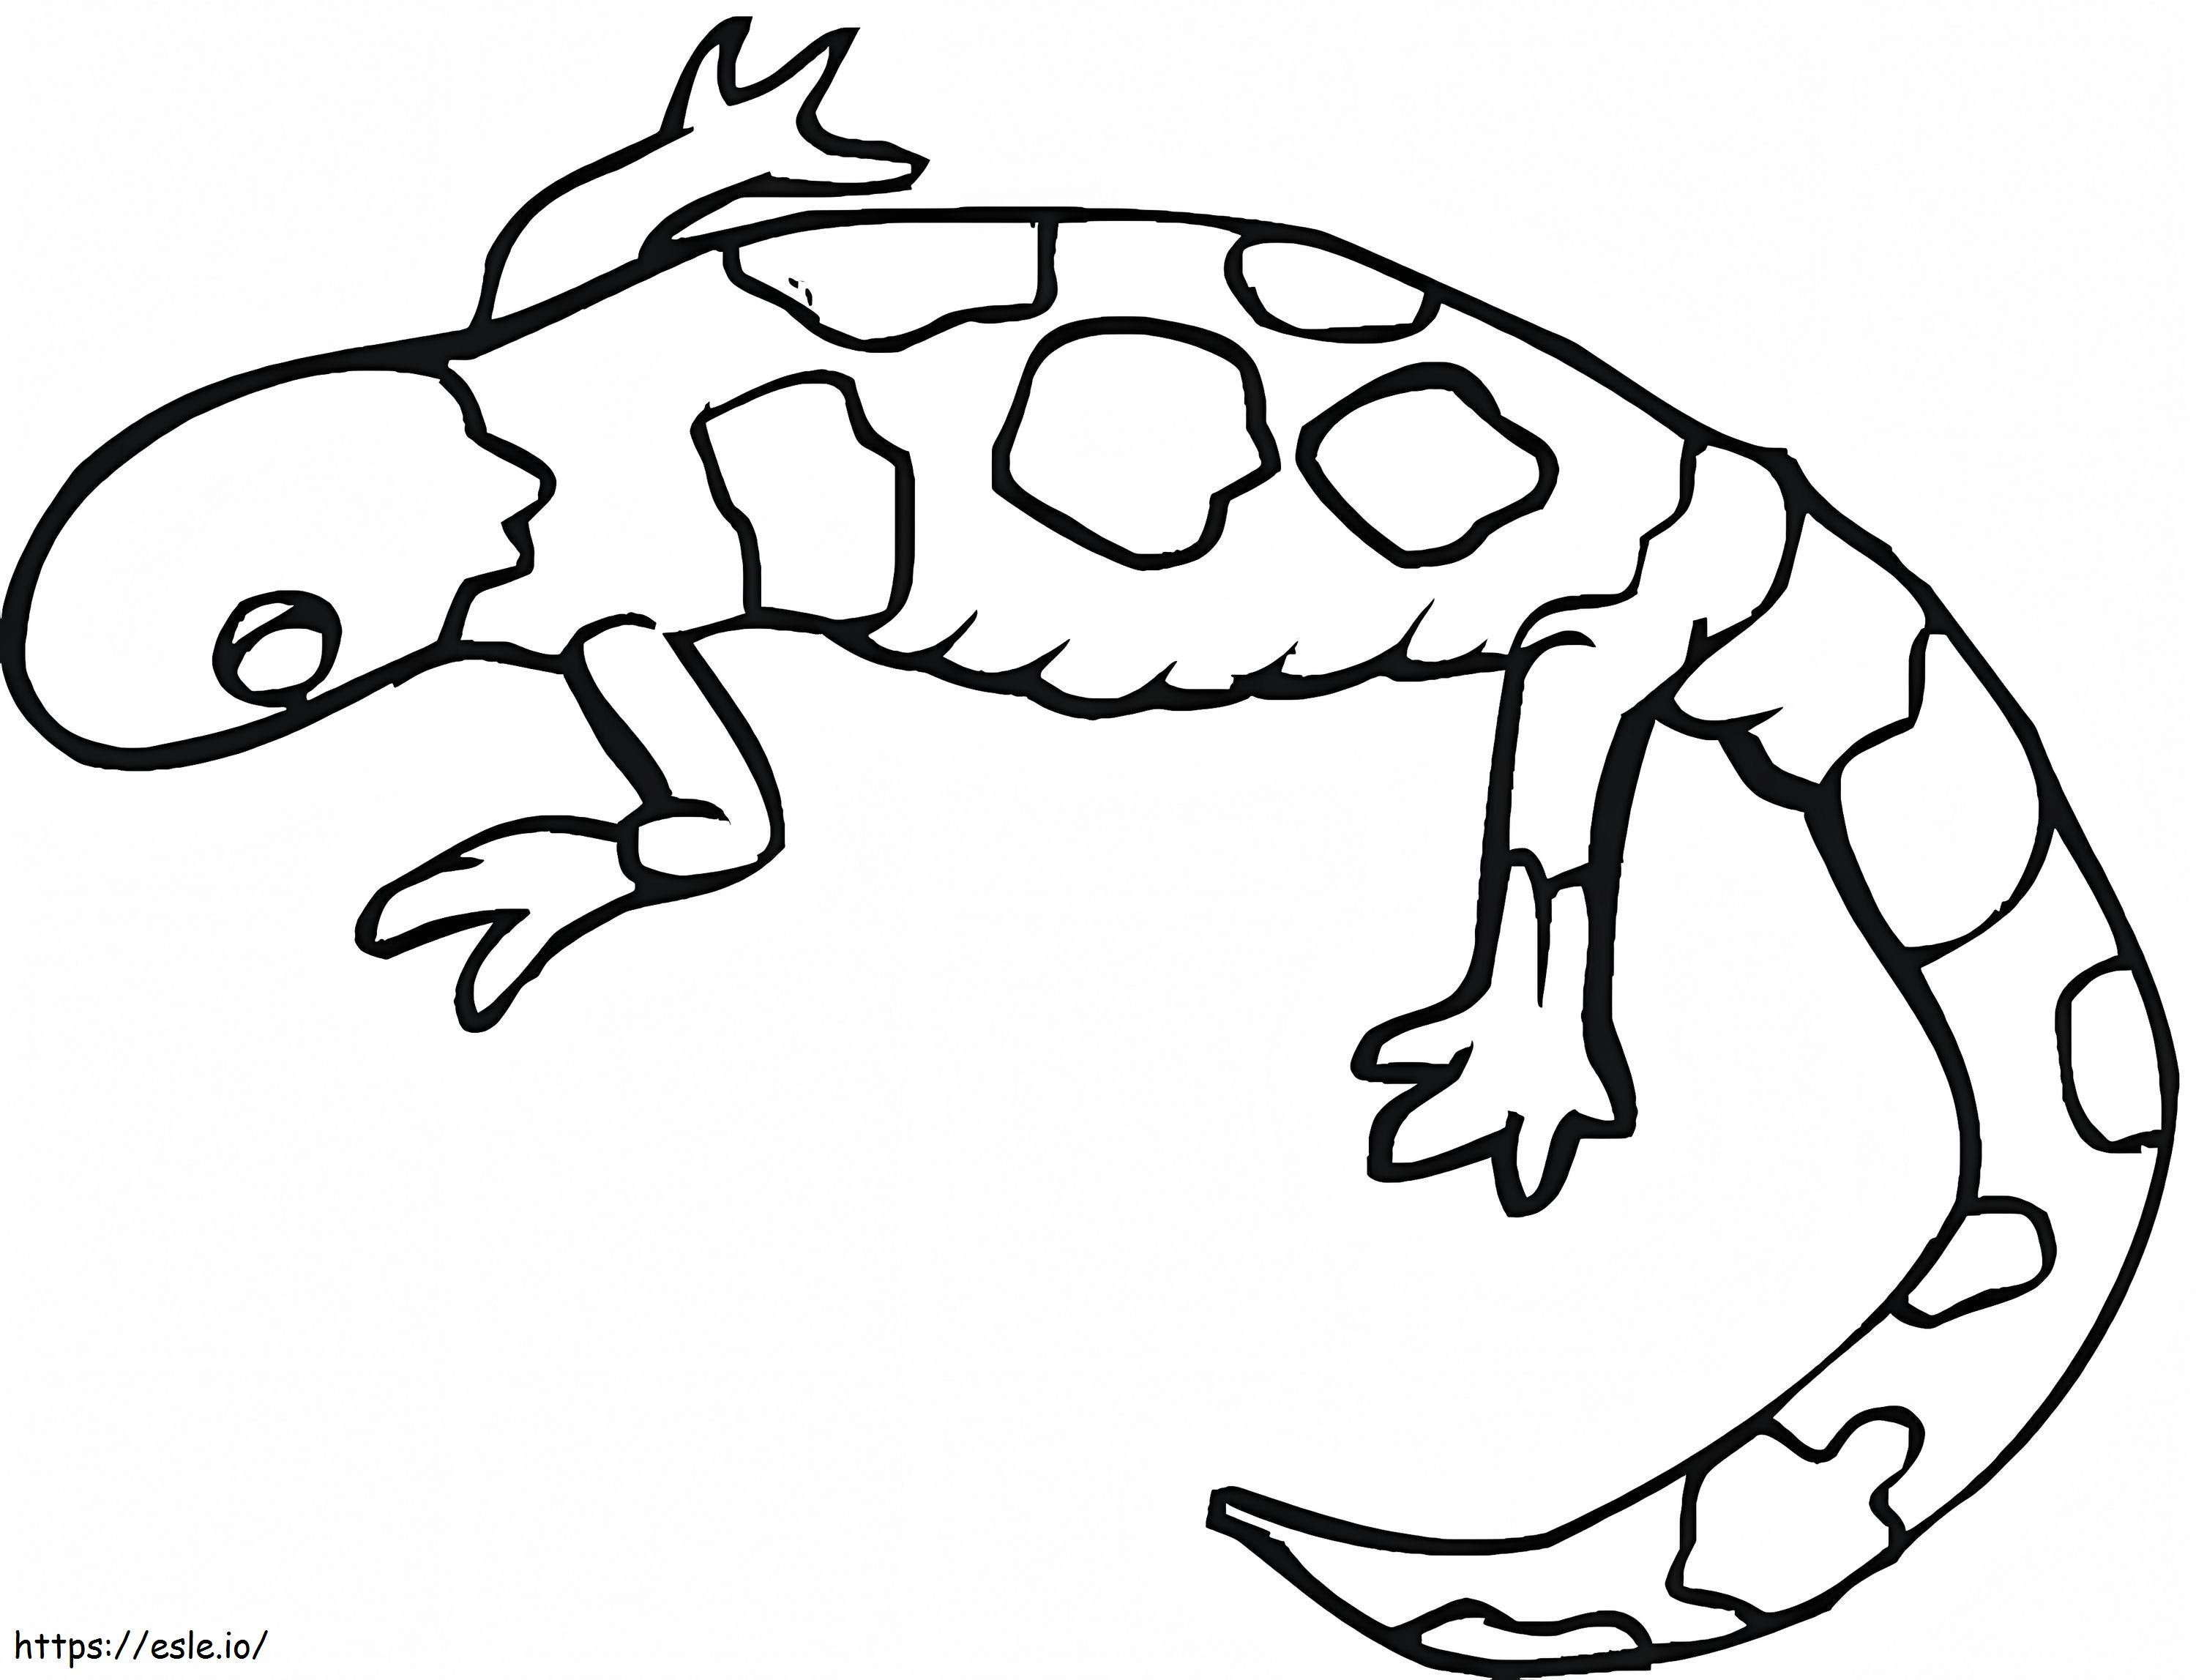 Coloriage Gecko gratuit à imprimer dessin